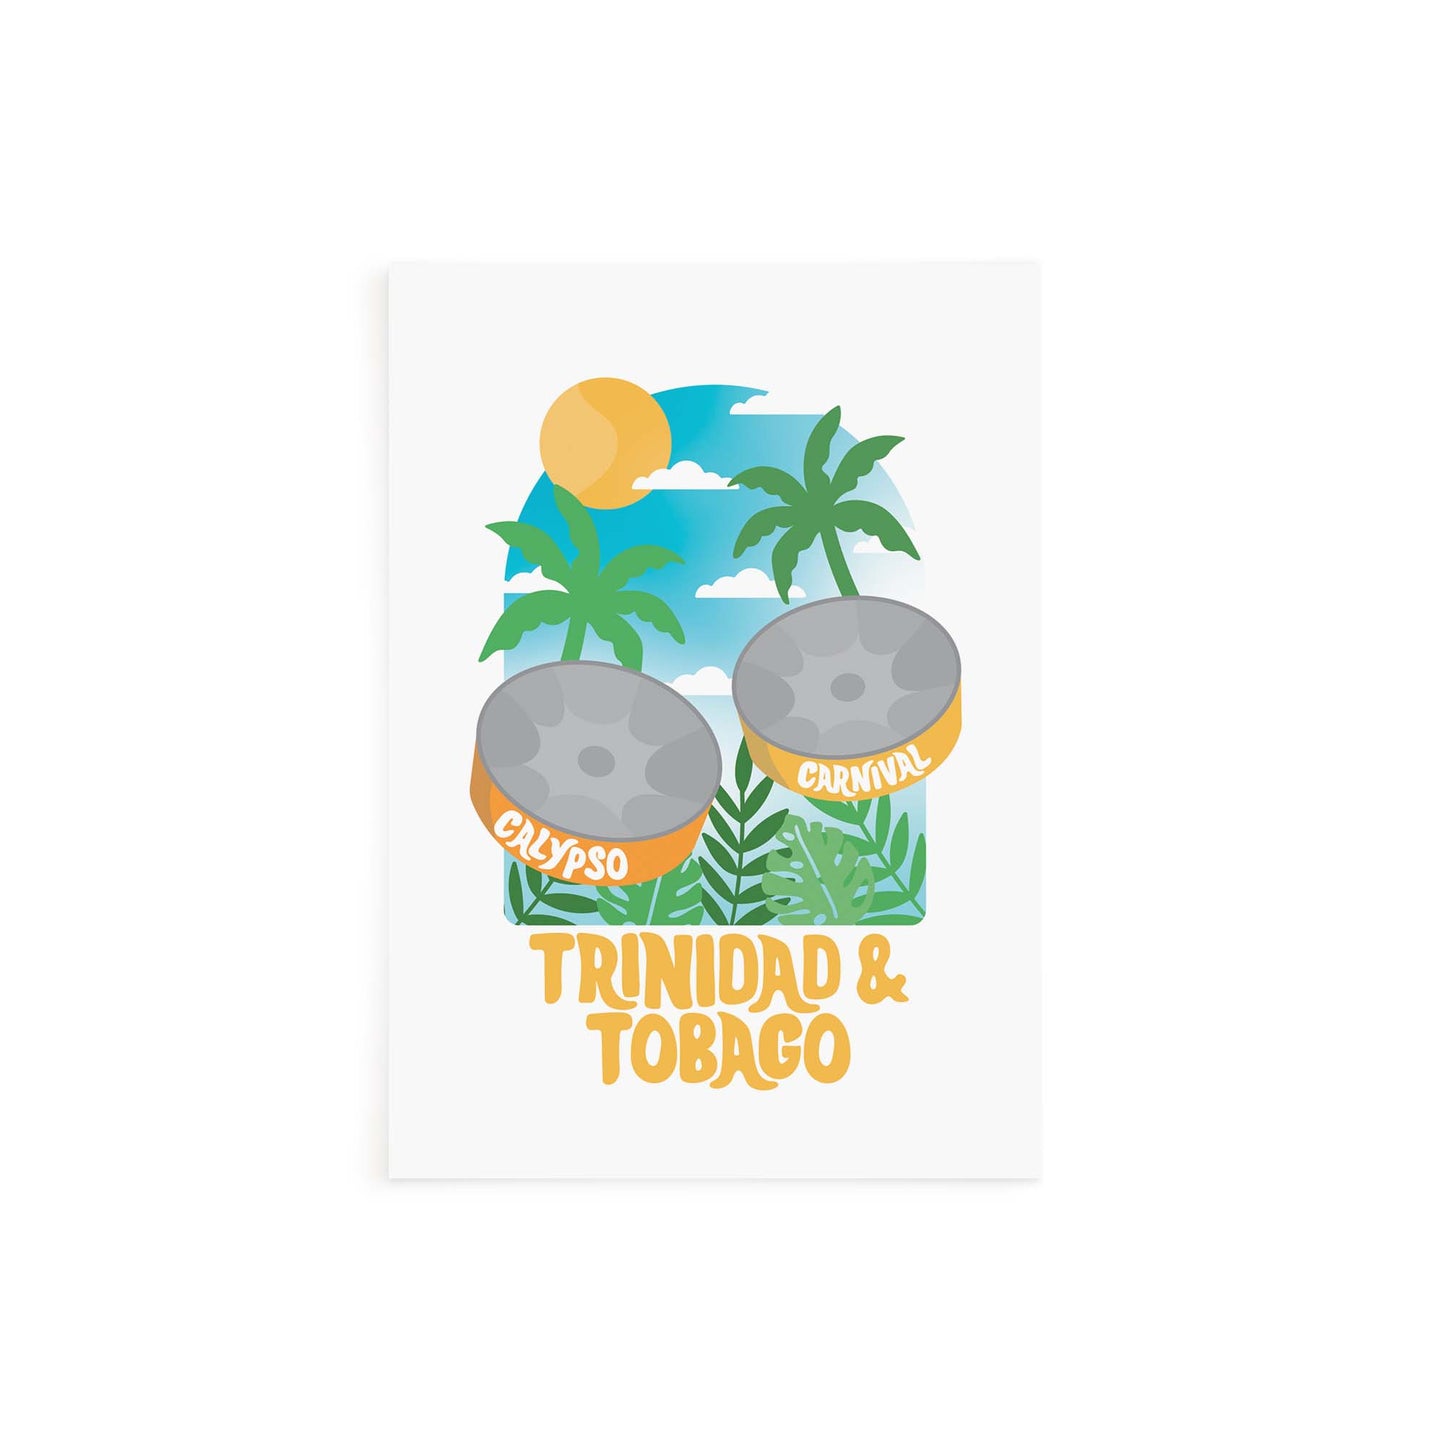 Window into Trinidad & Tobago Card